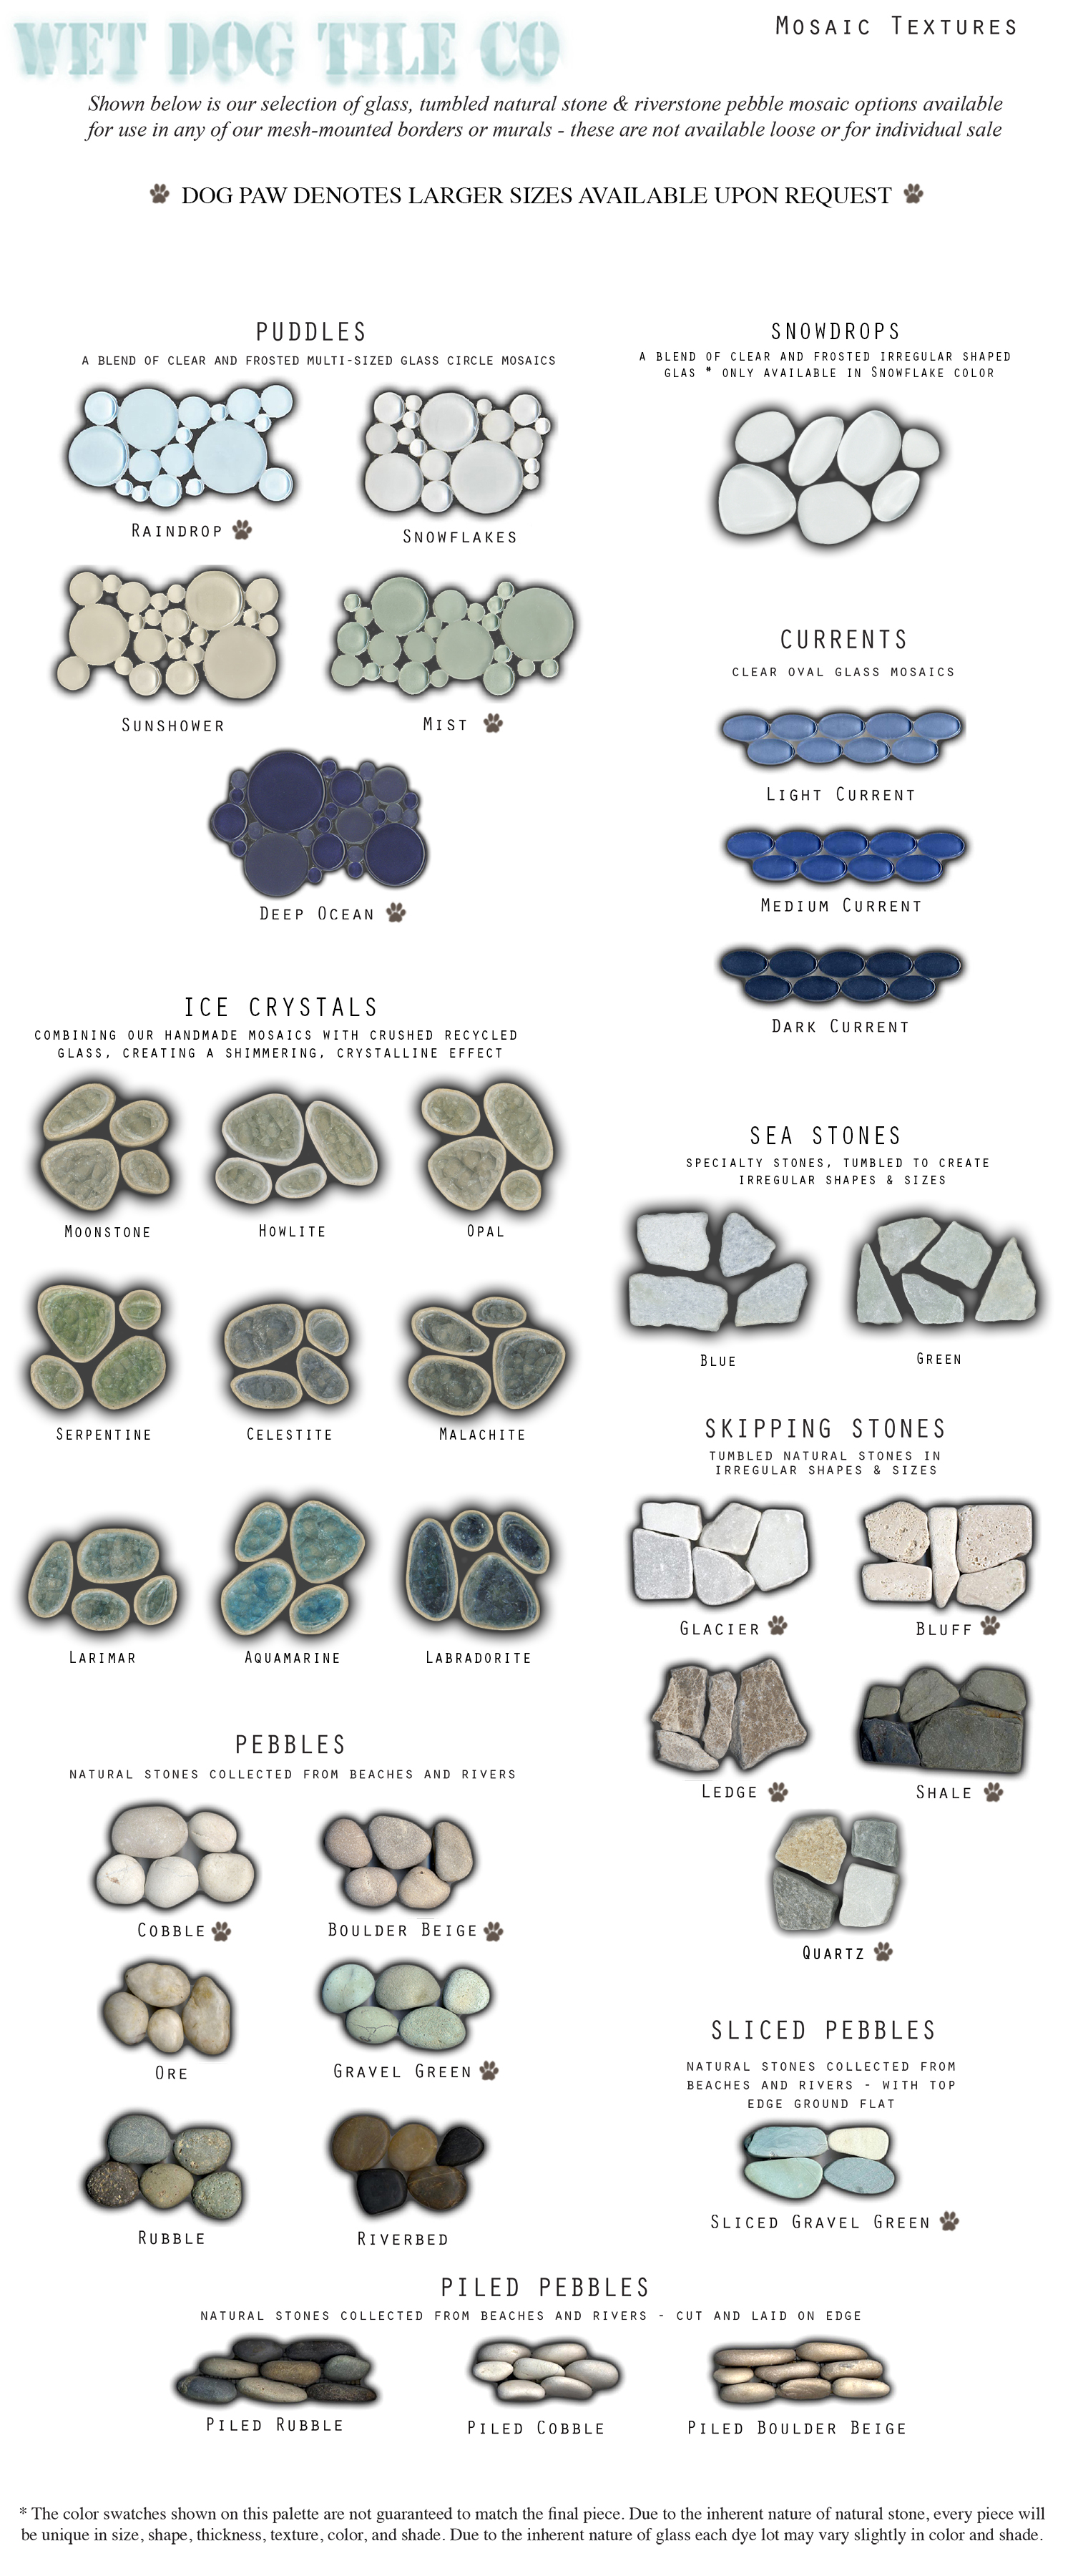 mosaic textures